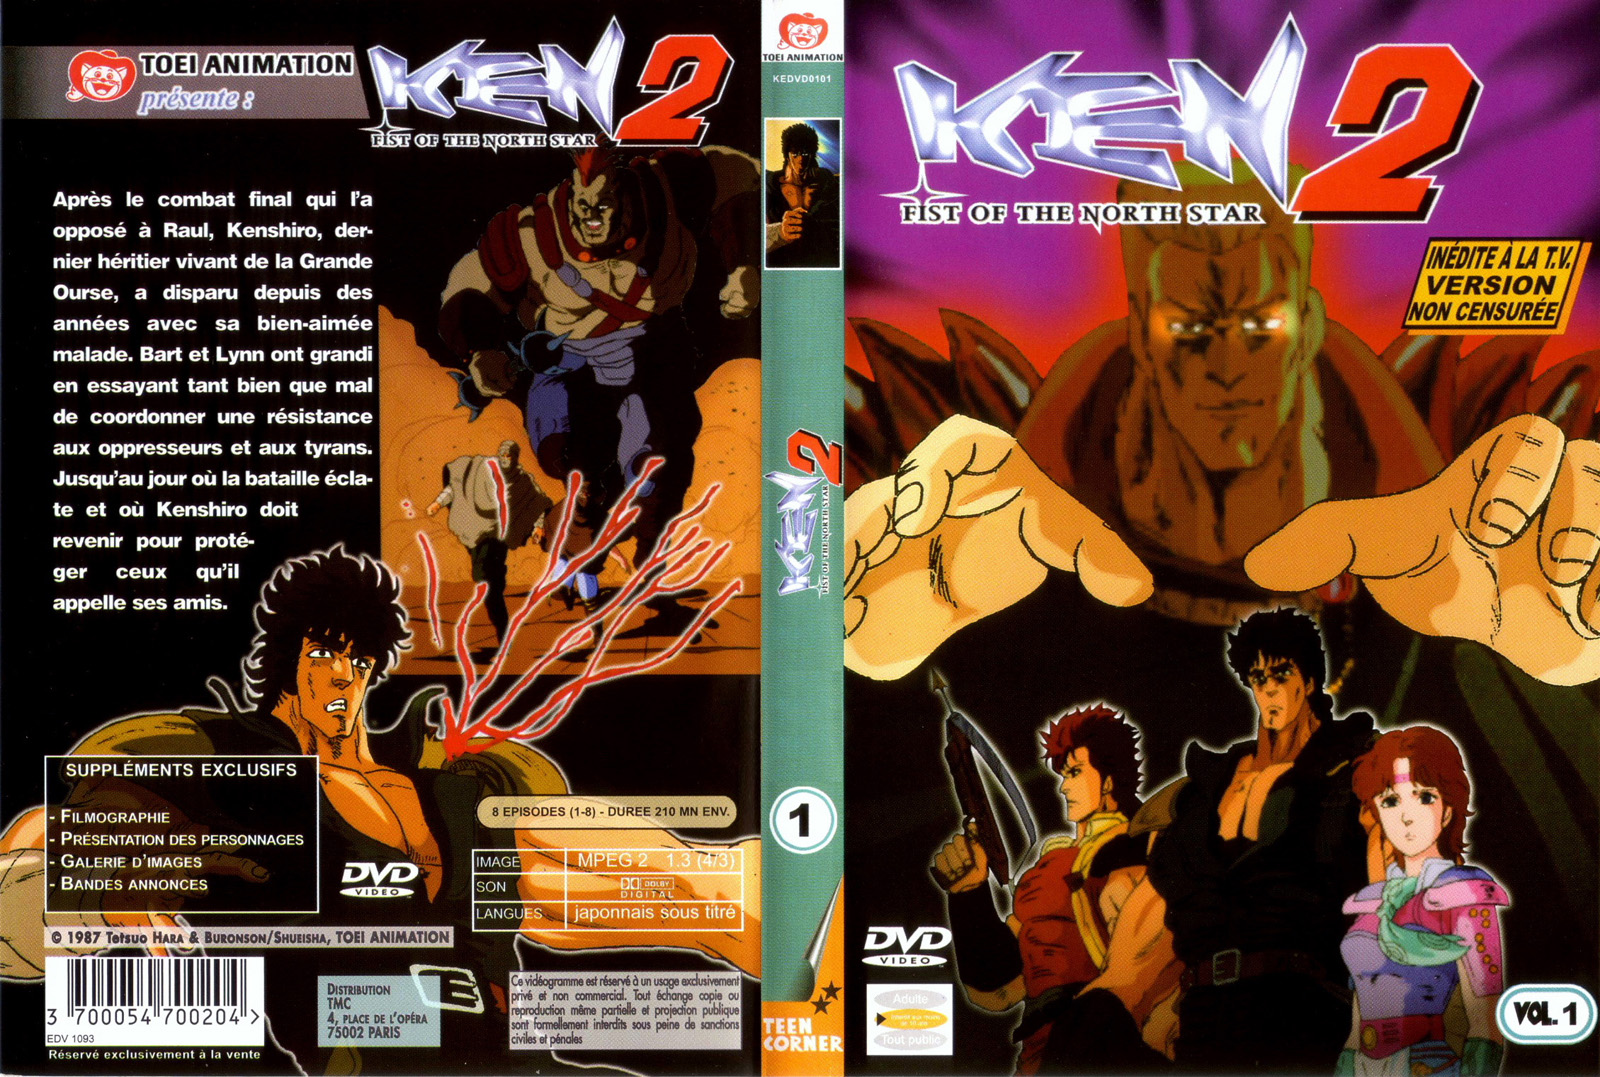 Jaquette DVD Ken 2 vol 1